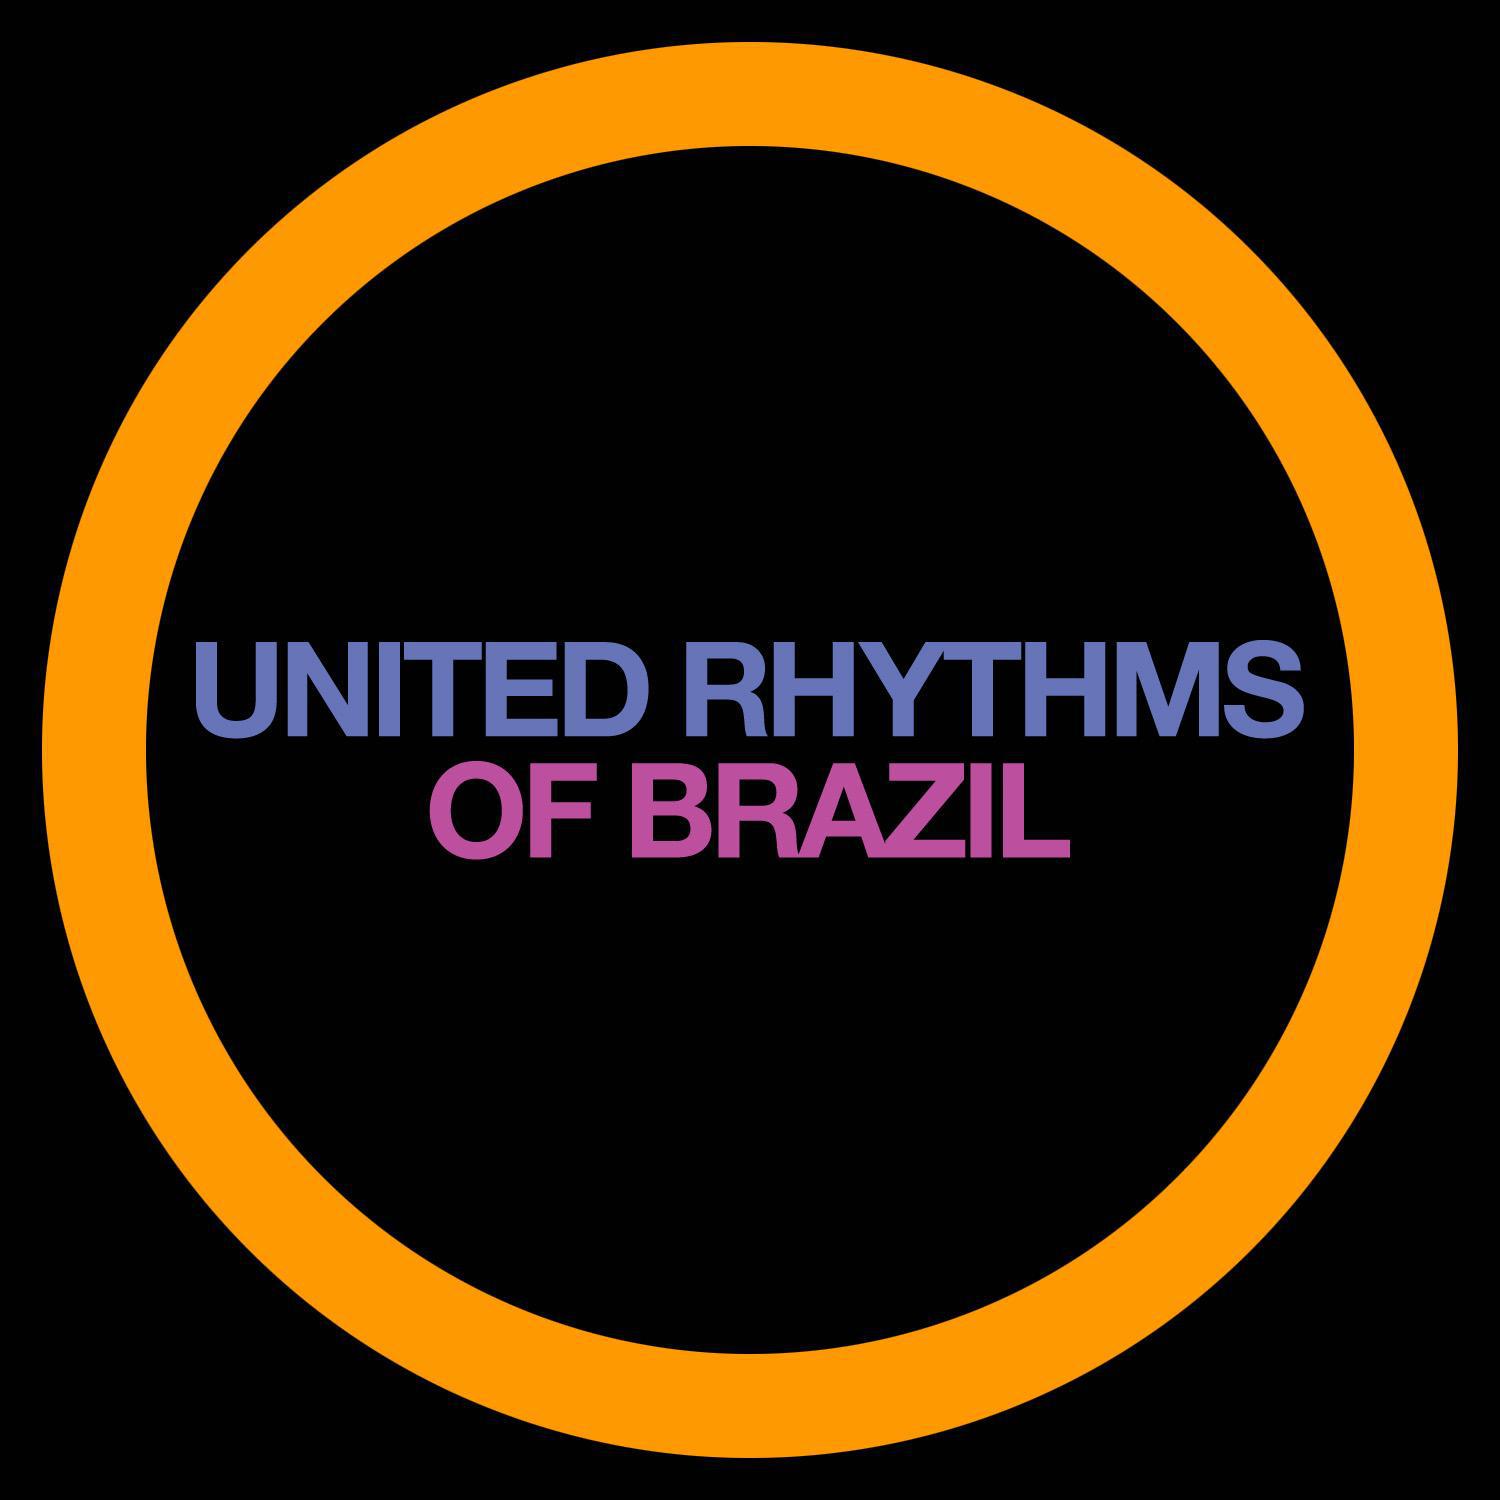 United Rhythms of Brazil